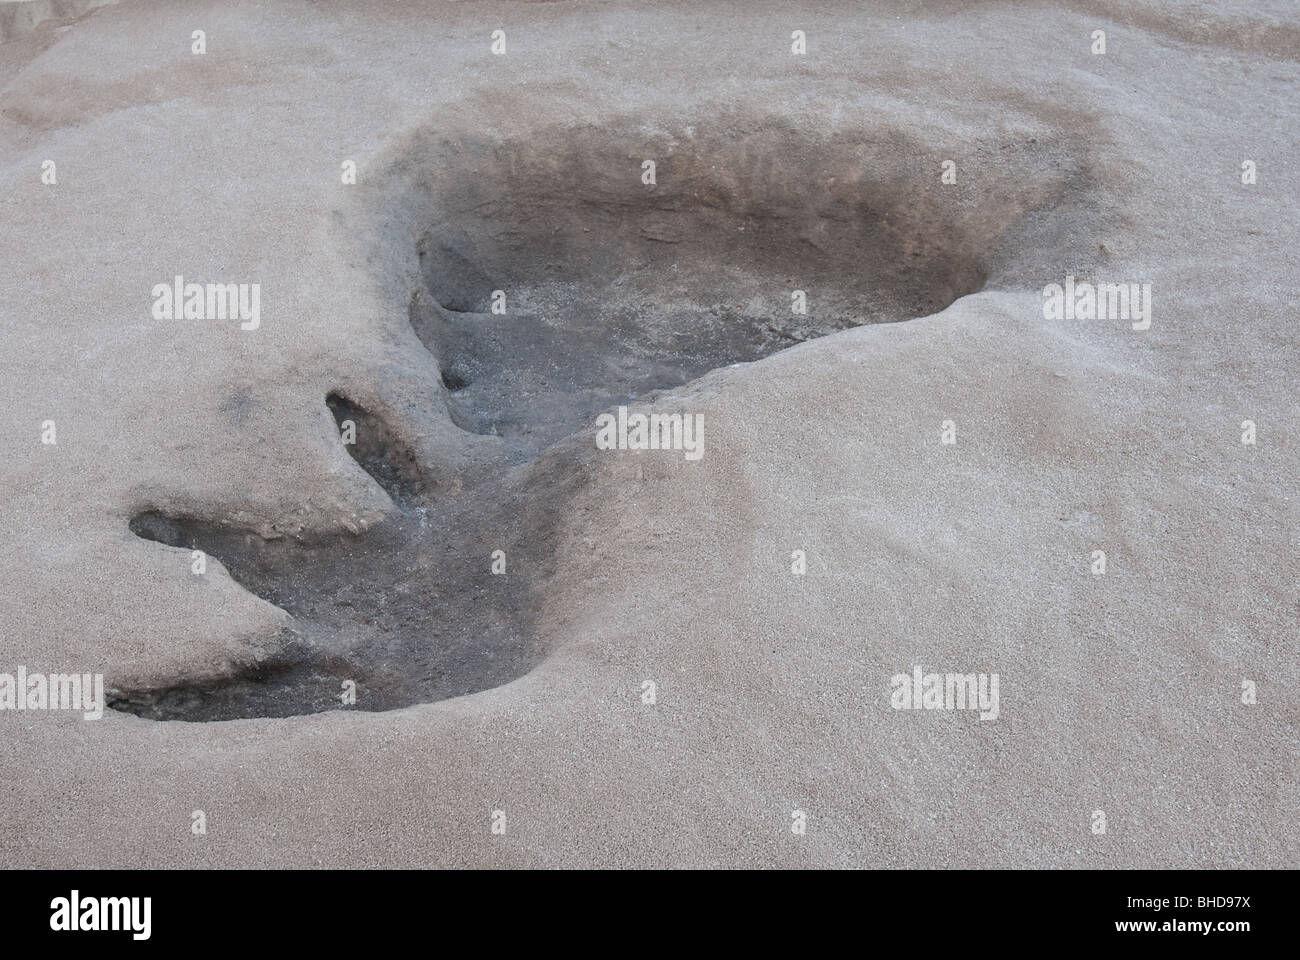 Dinosaur footprints at North Carolina Museum of Natural Sciences, Raleigh, North Carolina Stock Photo